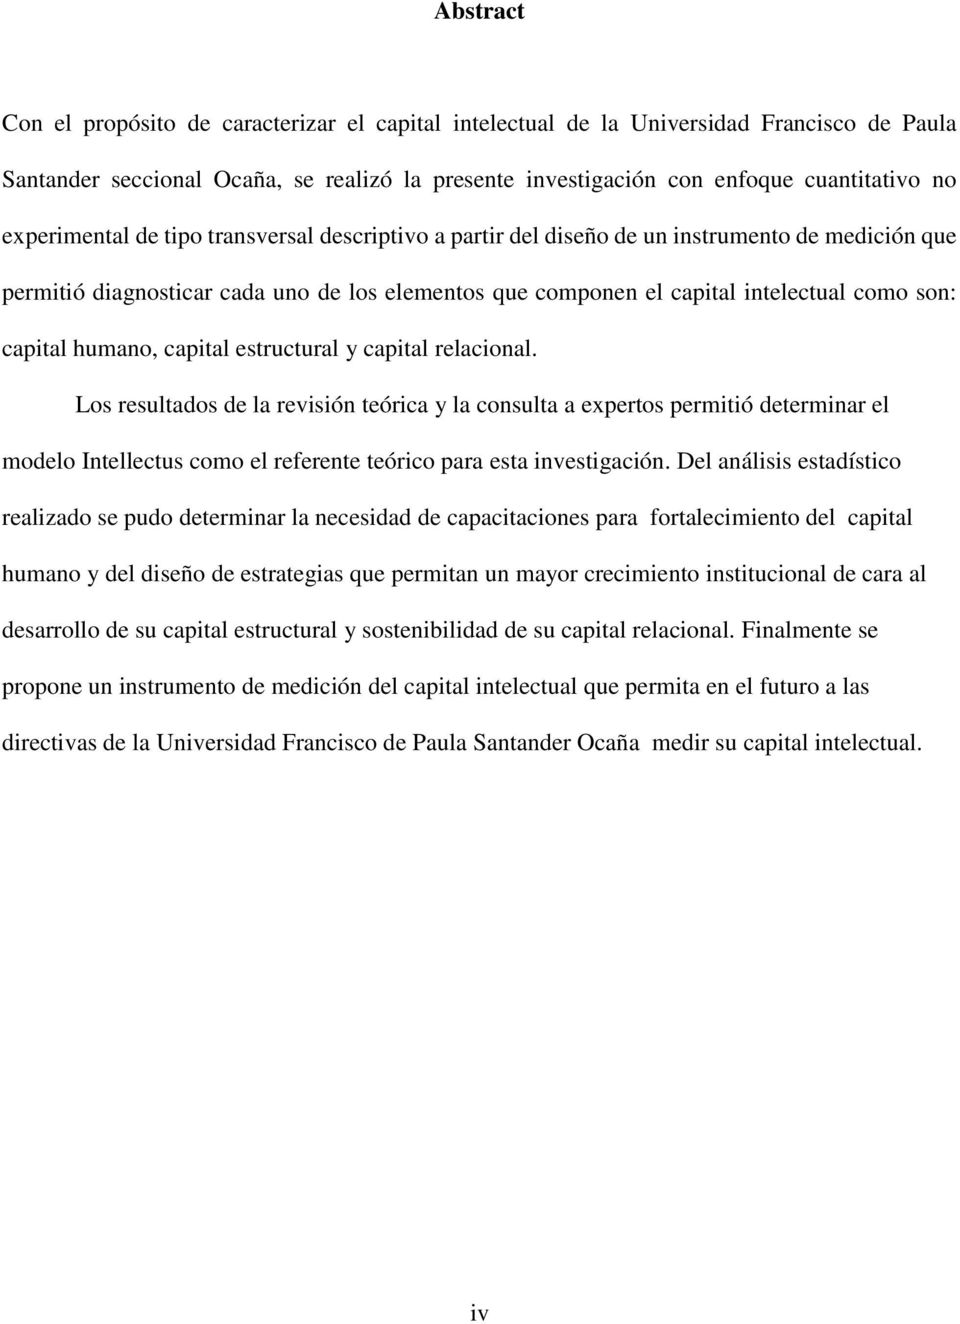 capital humano, capital estructural y capital relacional.